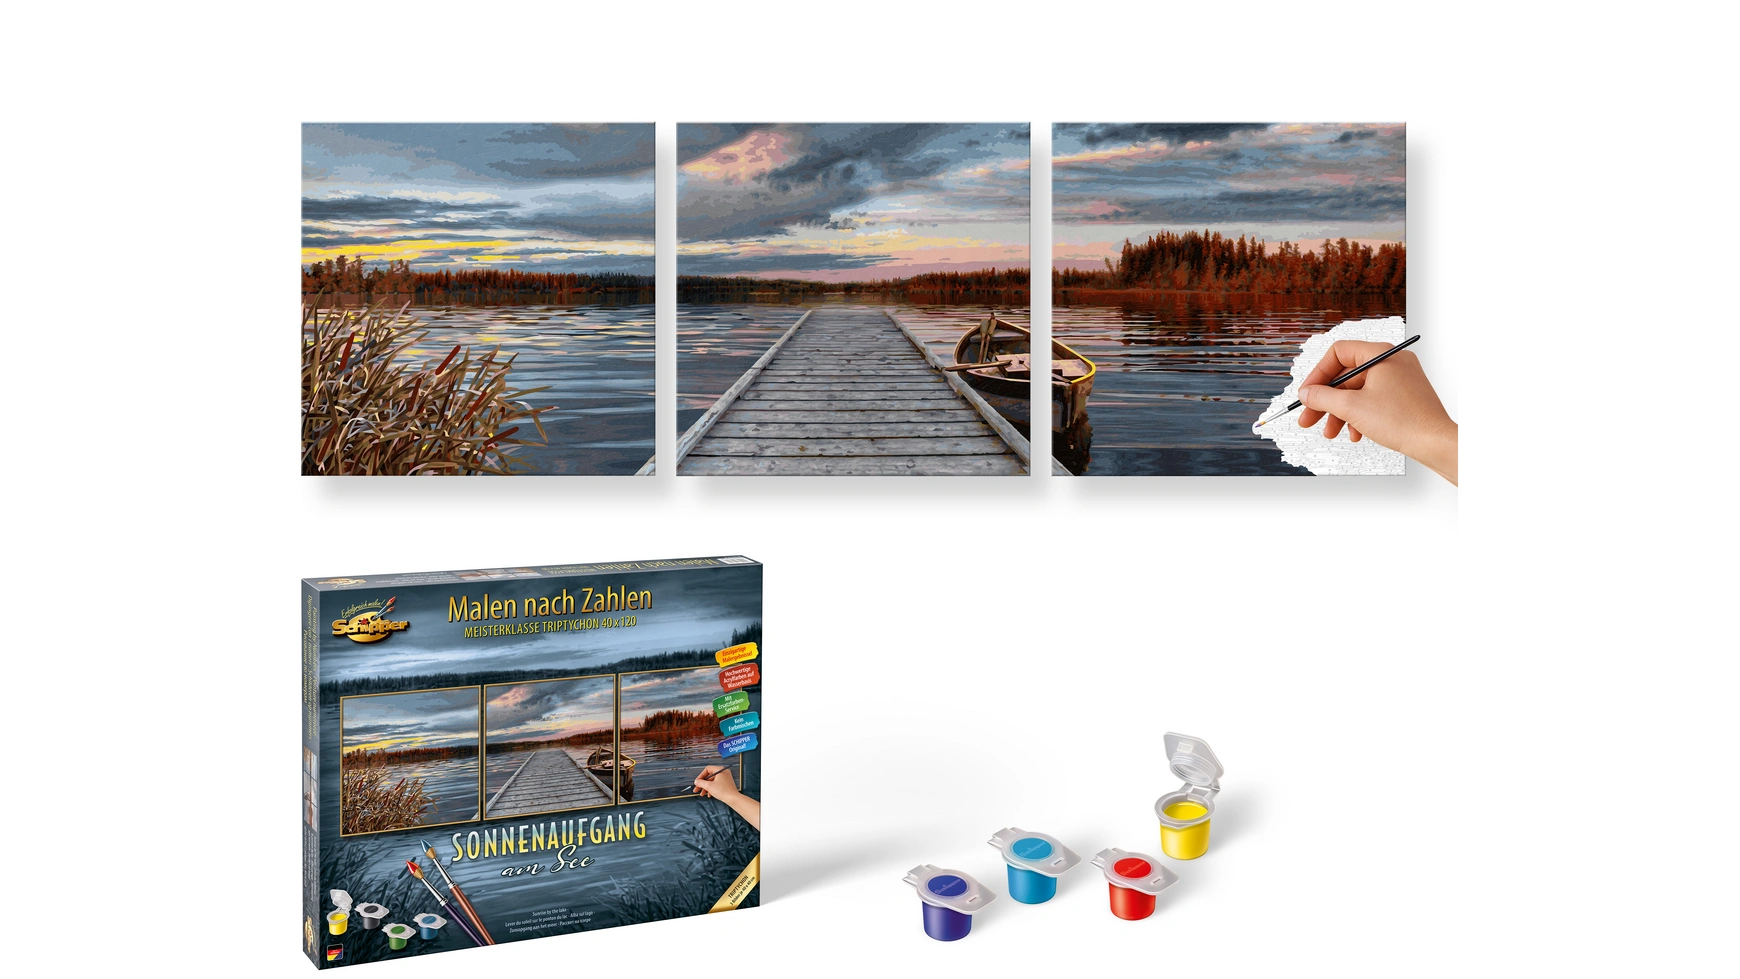 Картина Schipper по номерам Группа мотивов Триптих Восход солнца на озере (Триптих) Шаблон картины по номерам фото